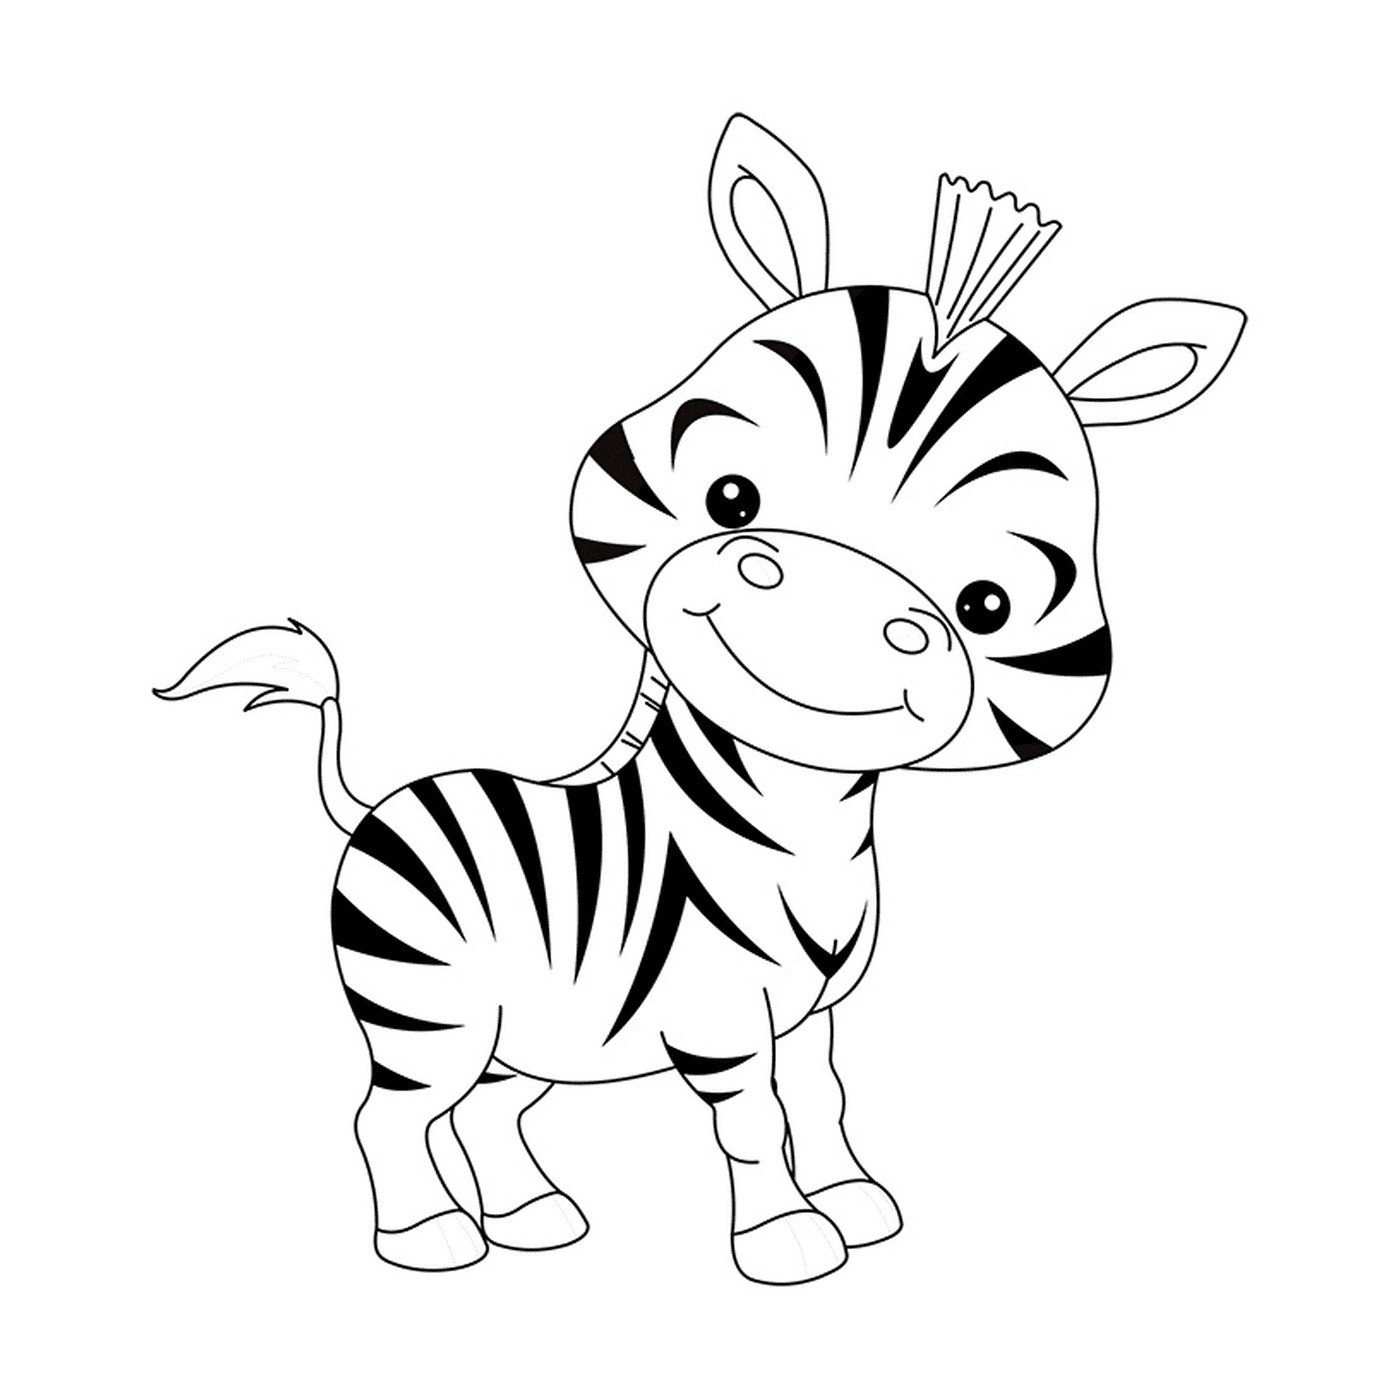  Ein Zebra 